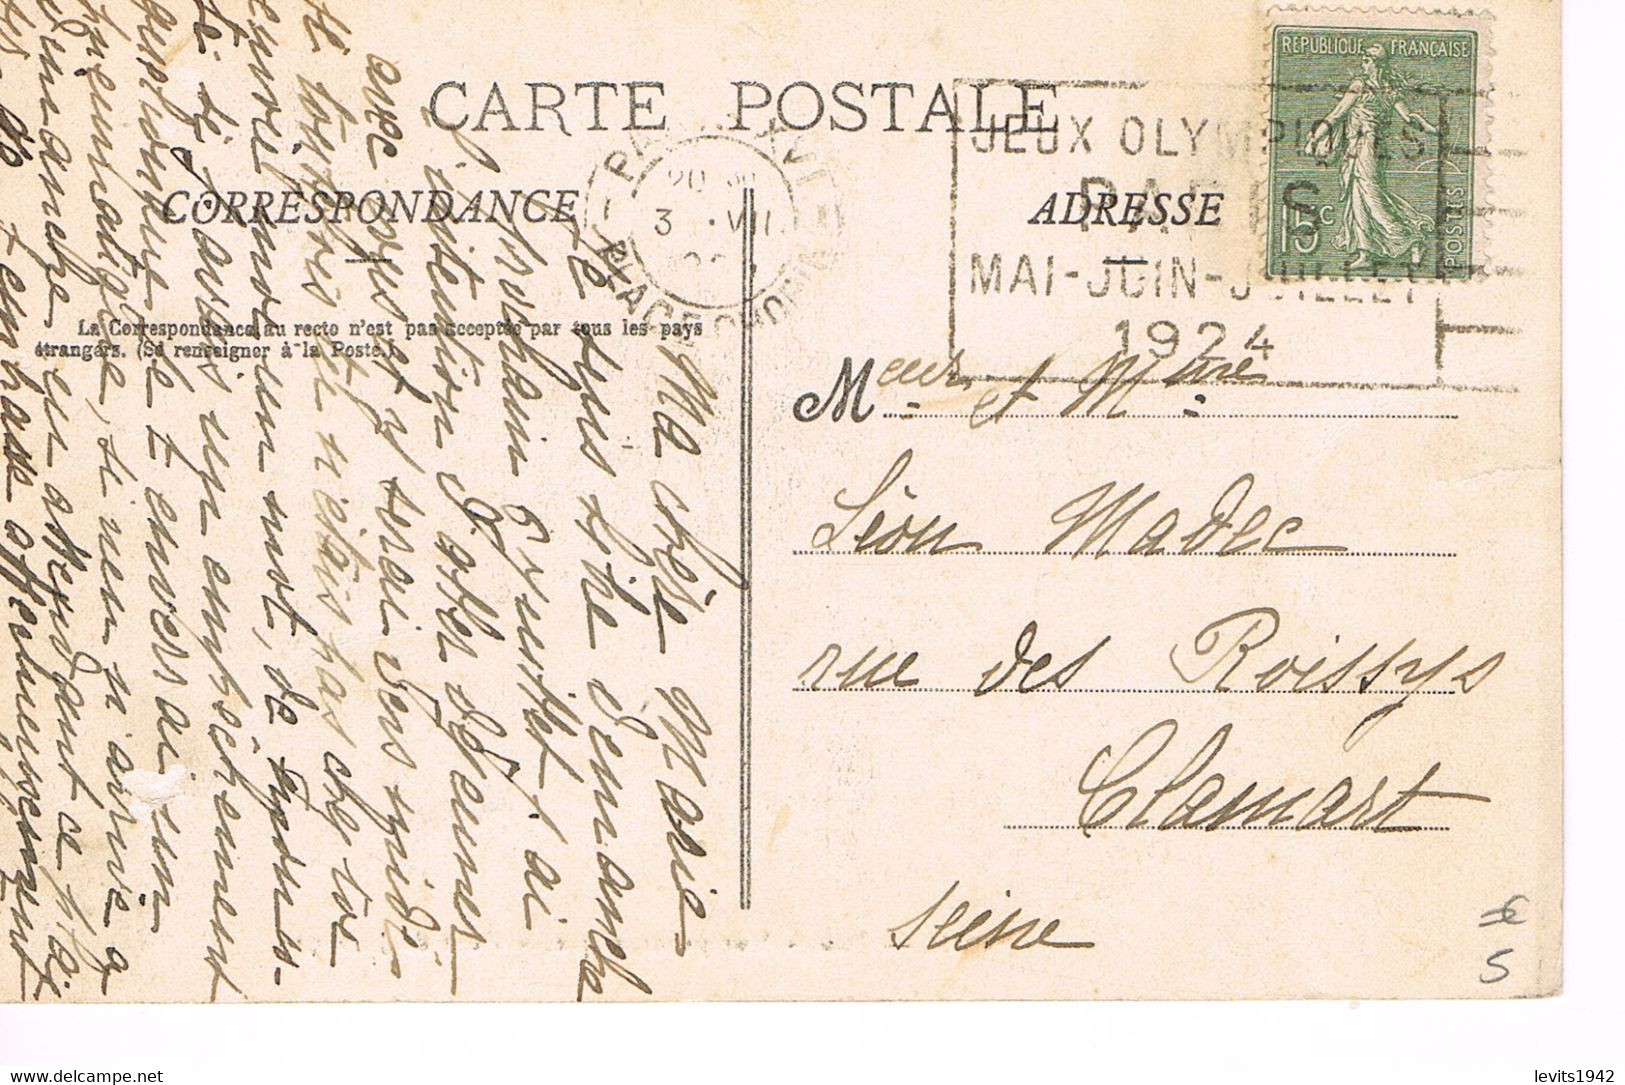 JEUX OLYMPIQUES 1924 -  MARQUE POSTALE - ESCRIME - TIR DE CHASSE - POLO - JOUR DE COMPETITION - 03-07 - - Sommer 1924: Paris